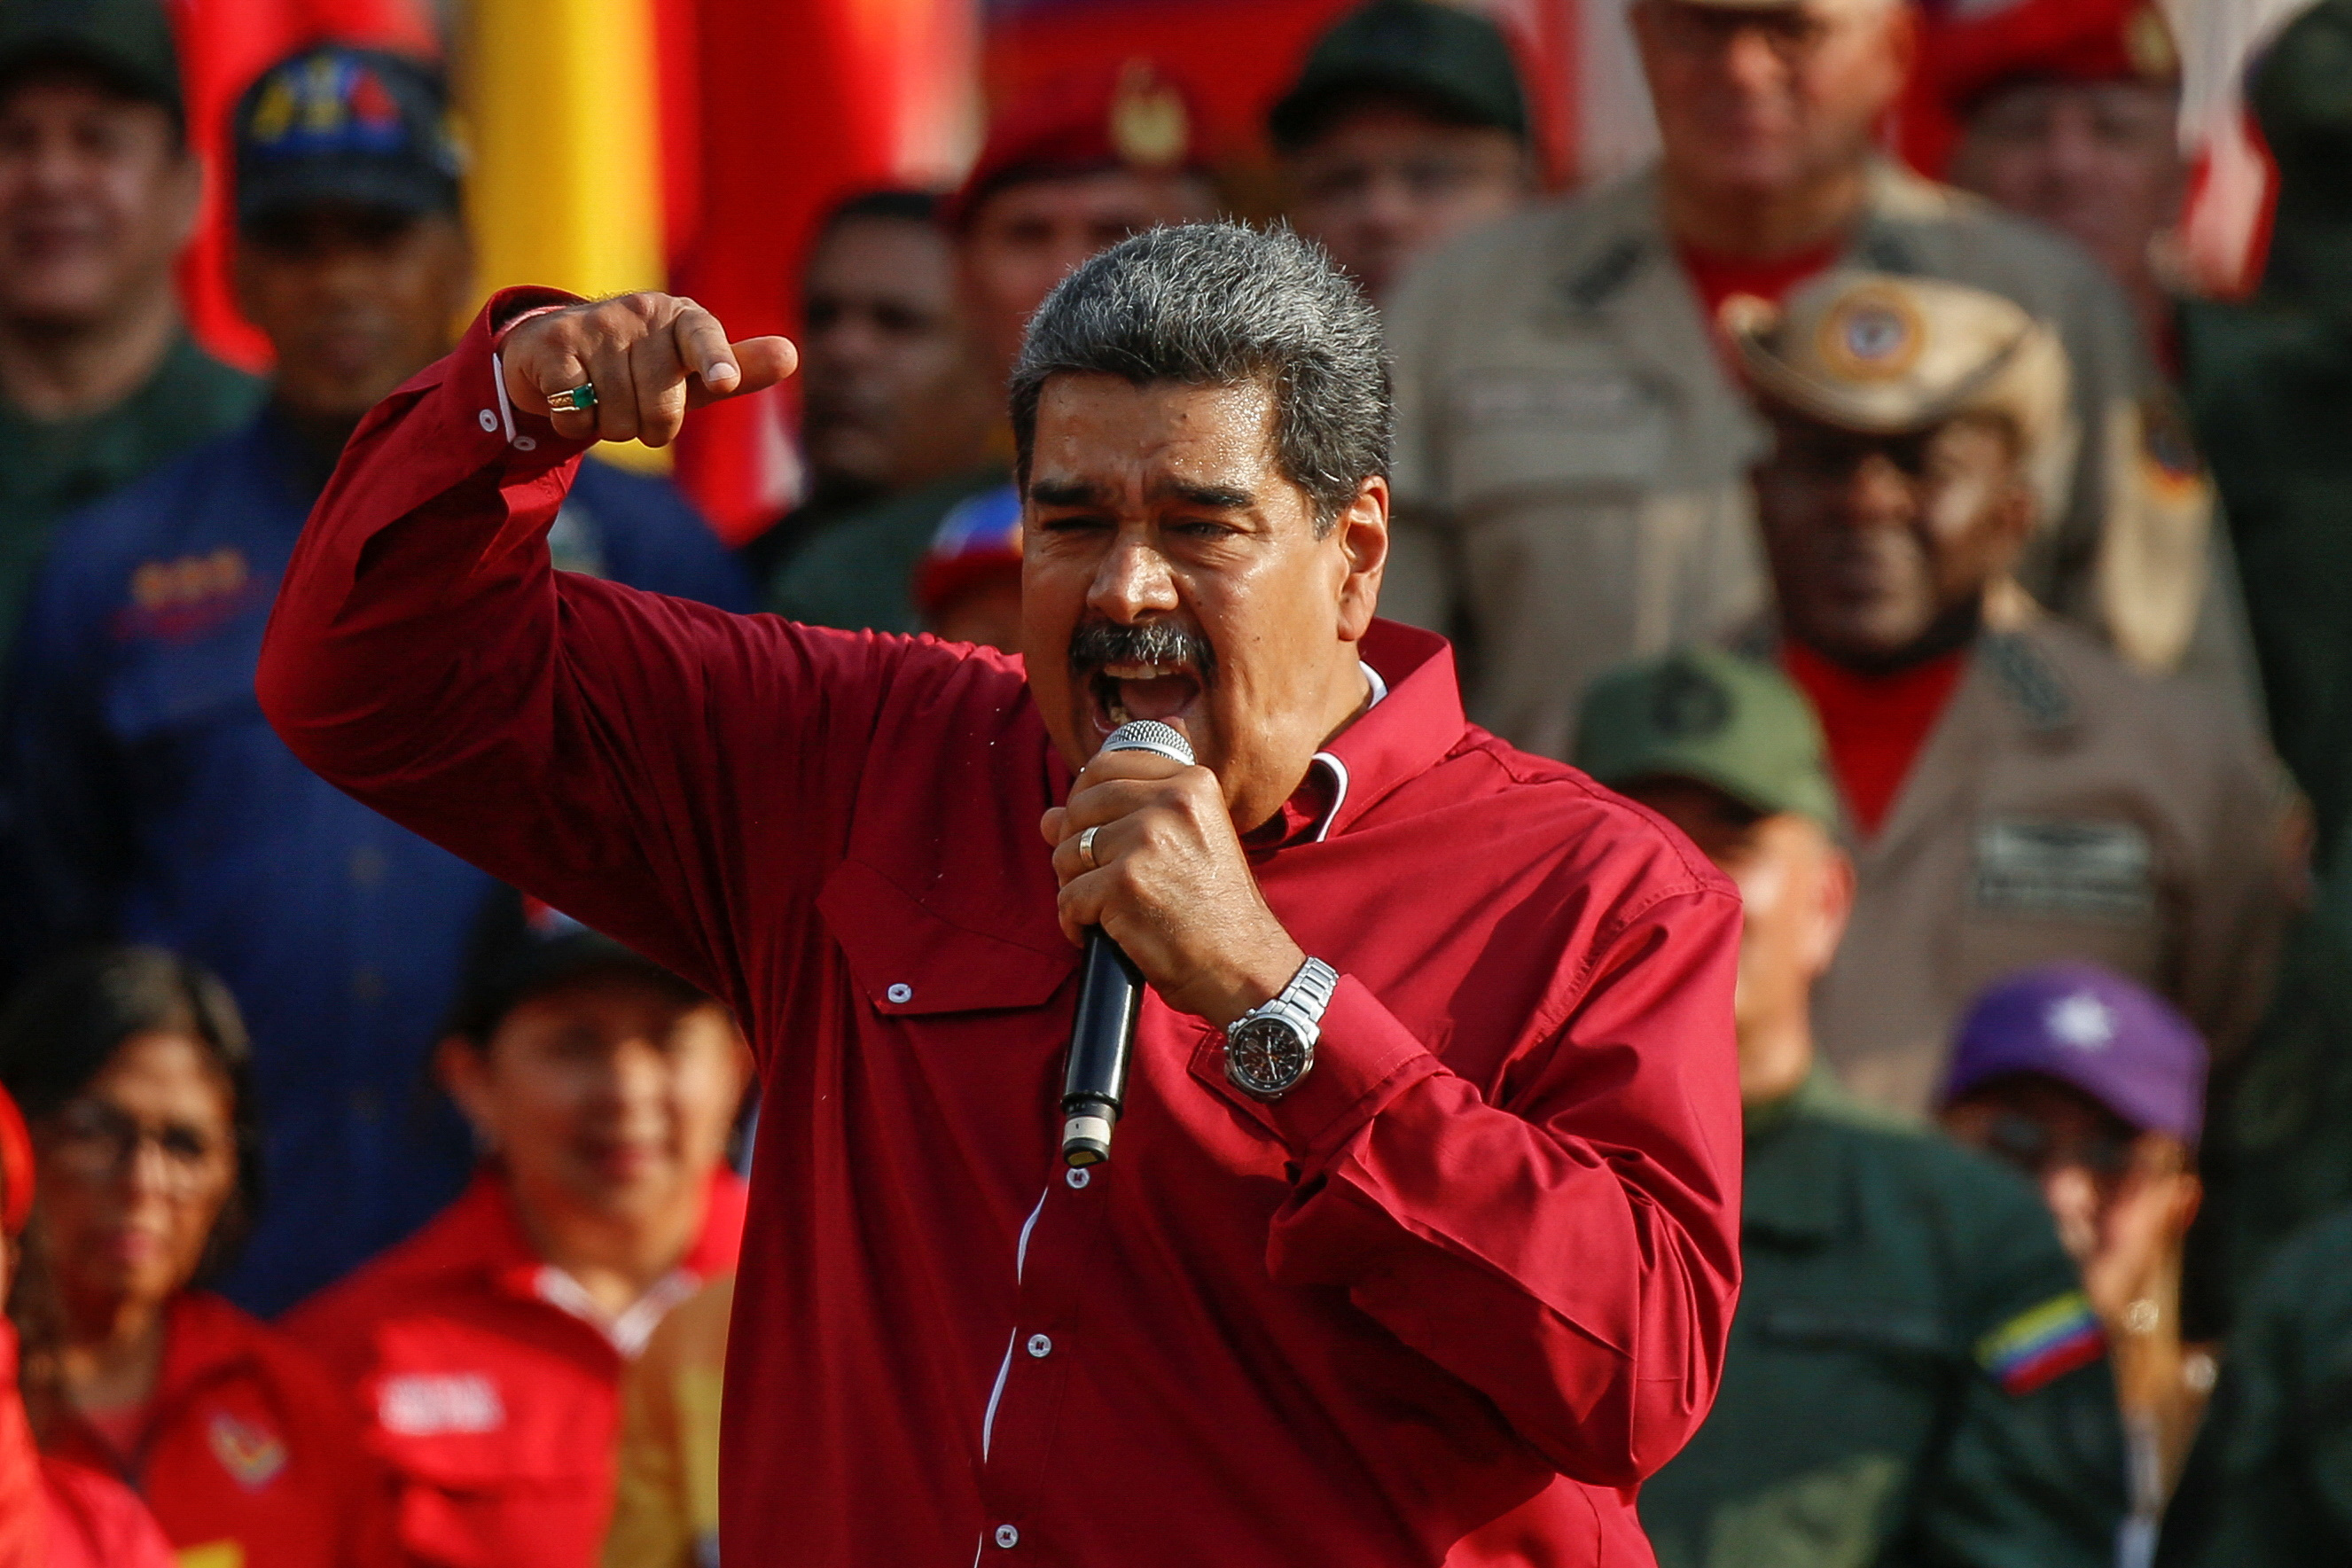 La advertencia de Nicolás Maduro en medio de la purga chavista: “Quien quiera un doble juego, que se atenga a las consecuencias”